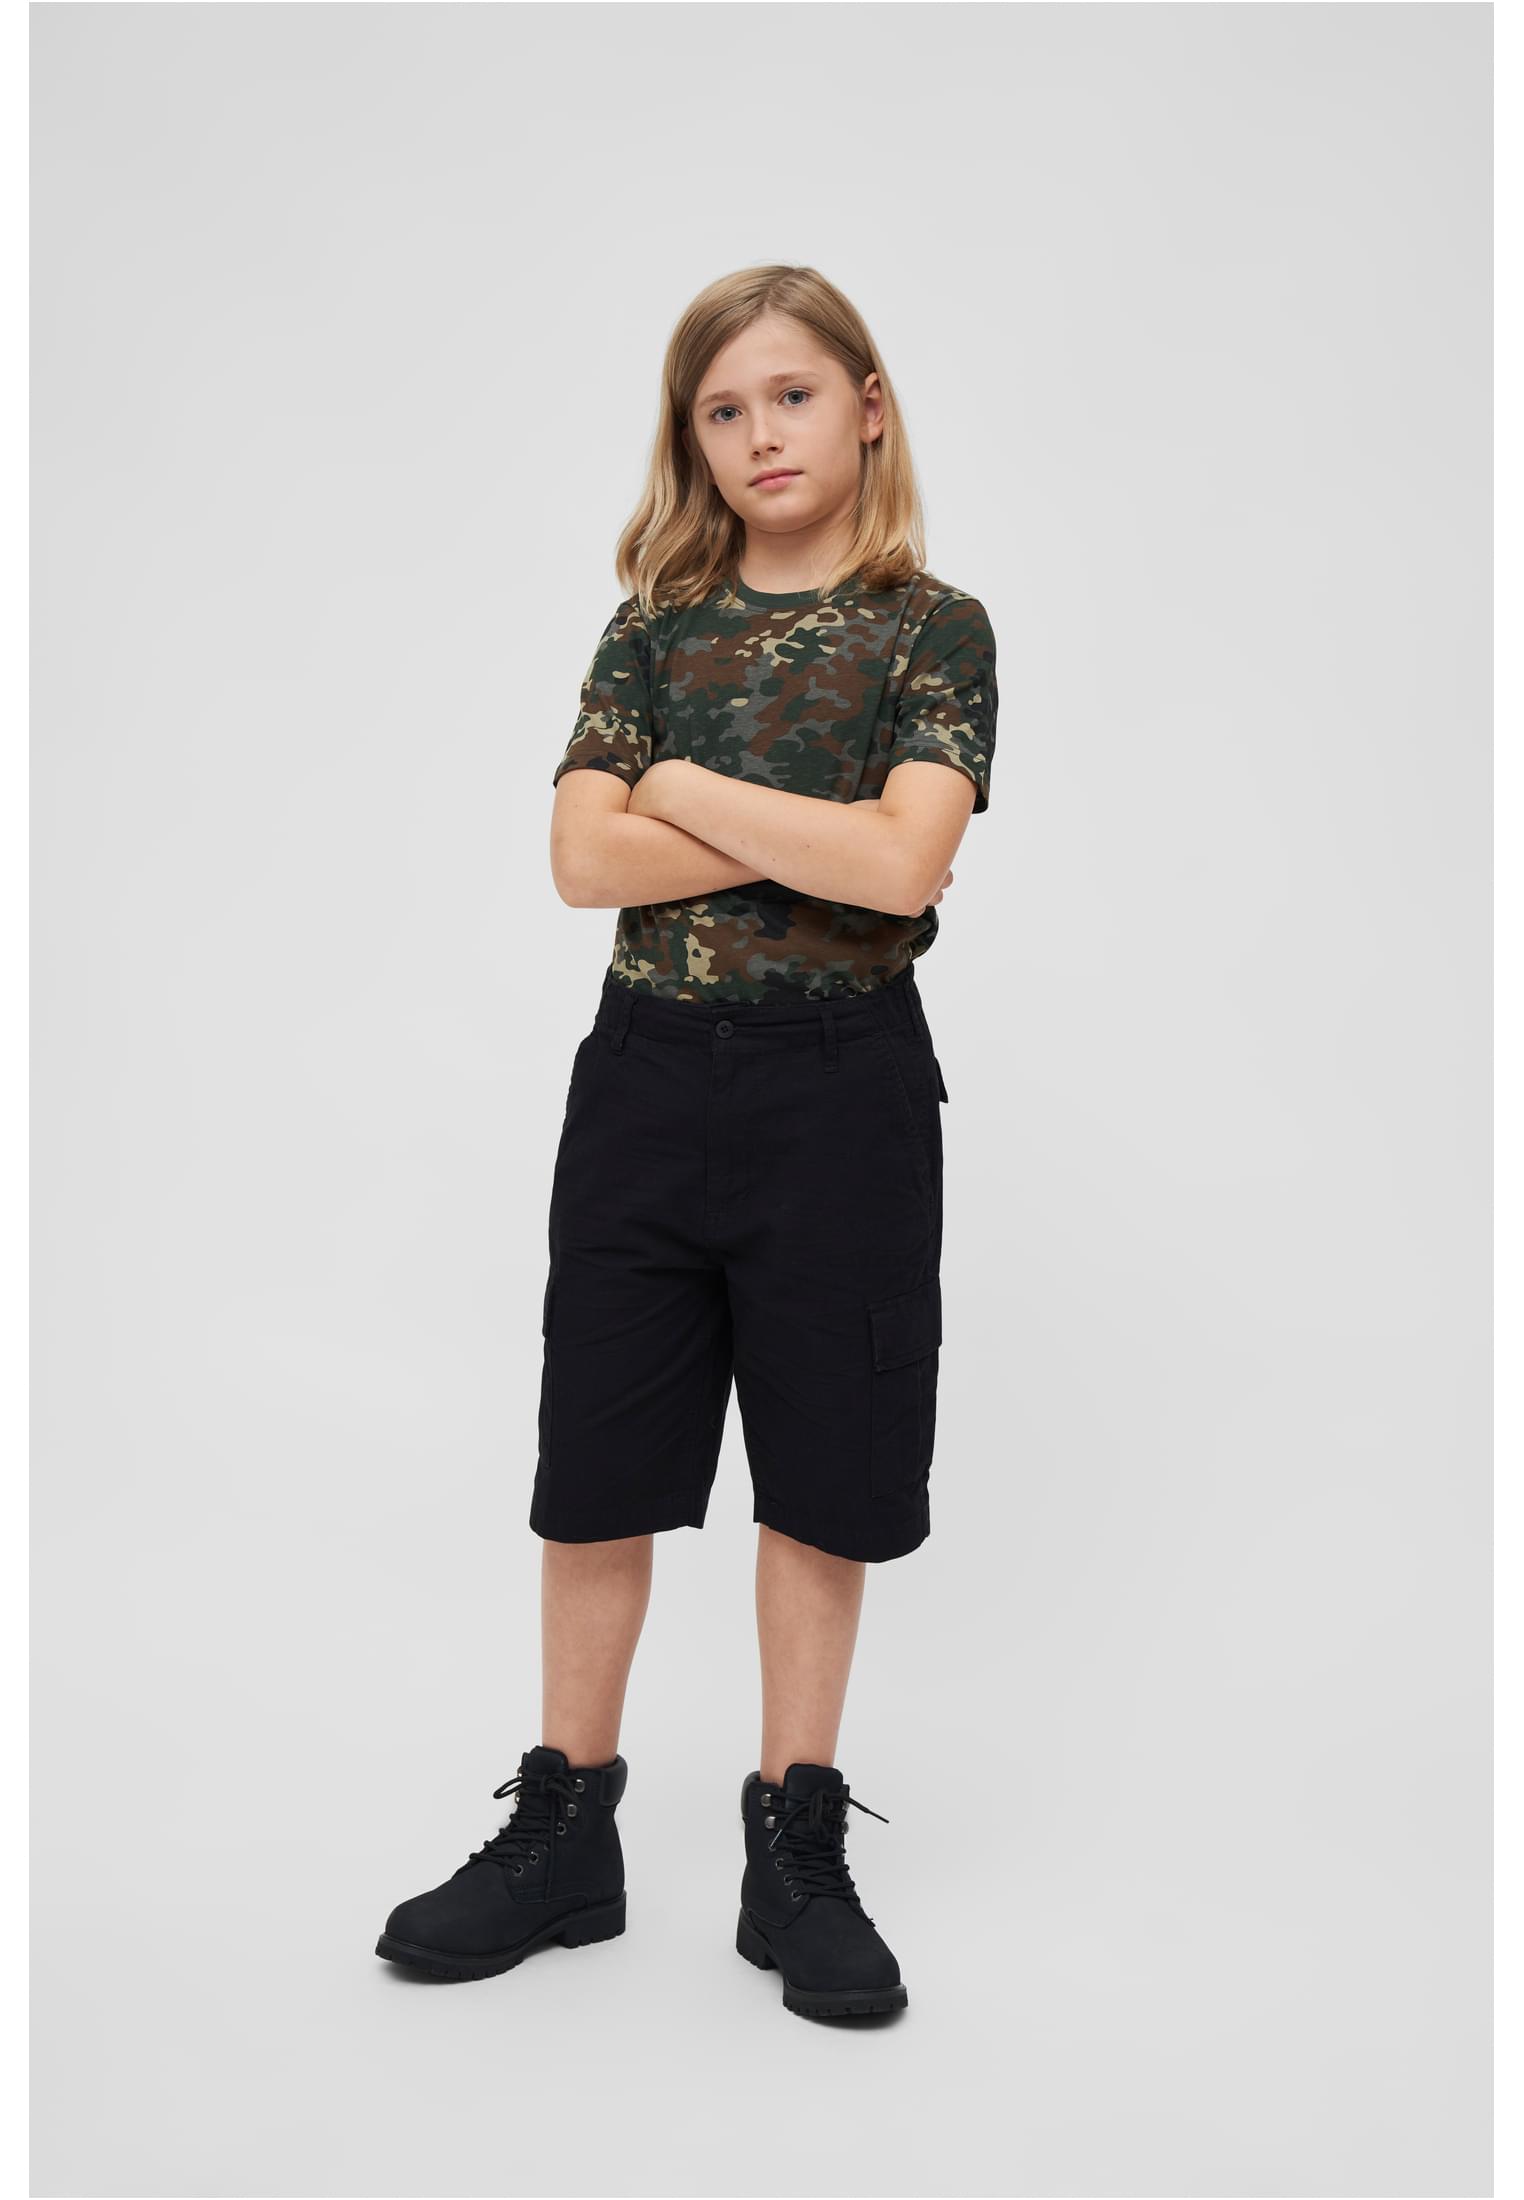 Kinder Kids BDU Ripstop Shorts in Farbe black